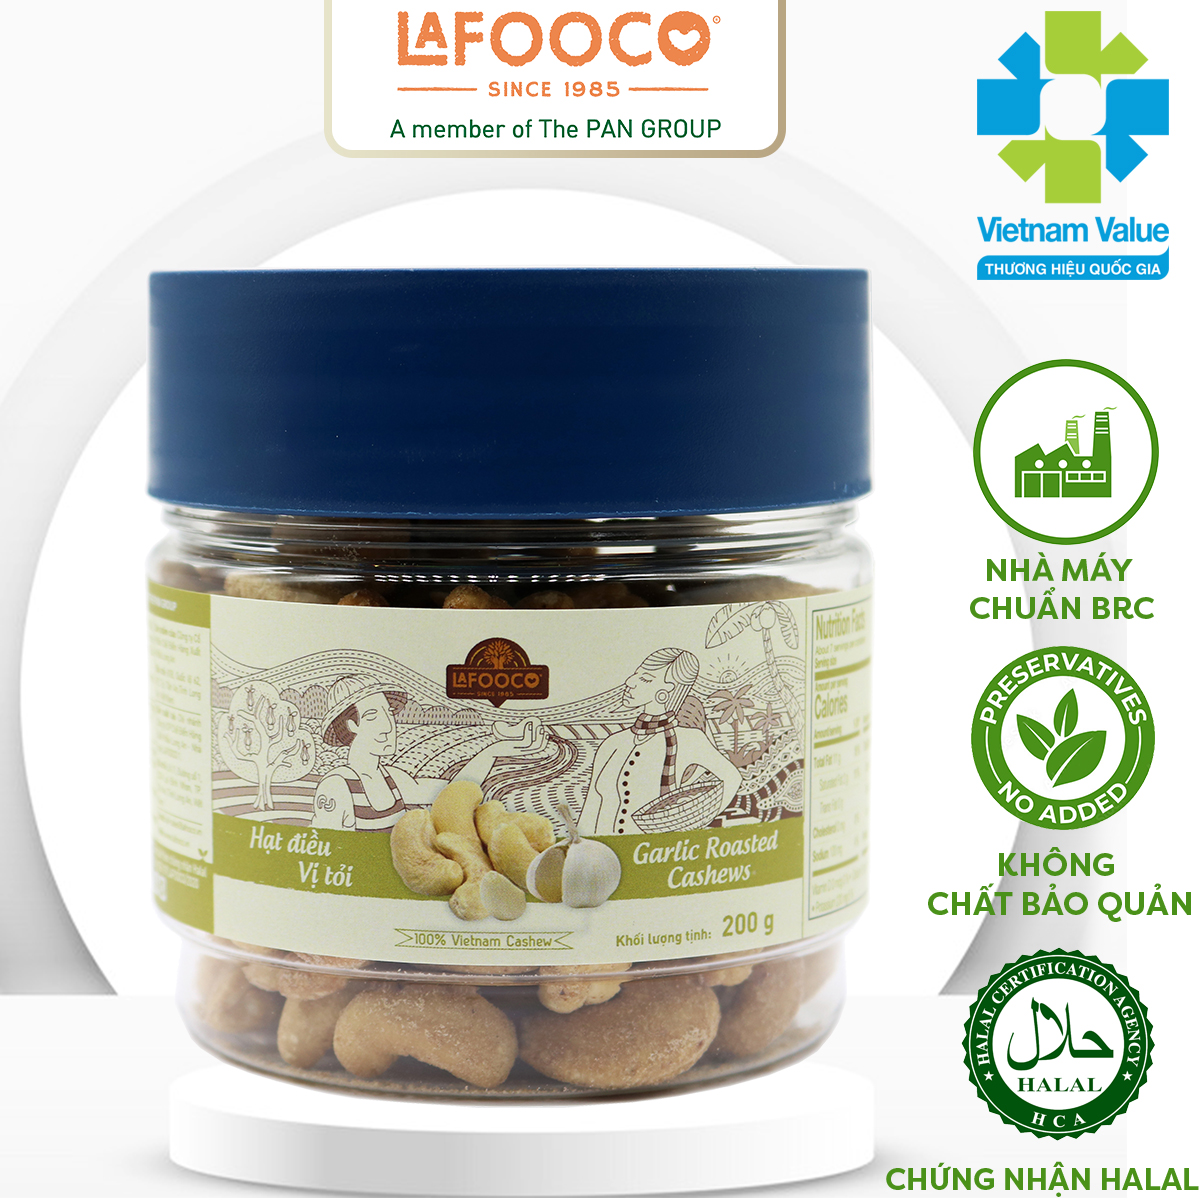  Hạt Điều Vị Tỏi 200g LAFOOCO Garlic Roasted Cashew Nuts